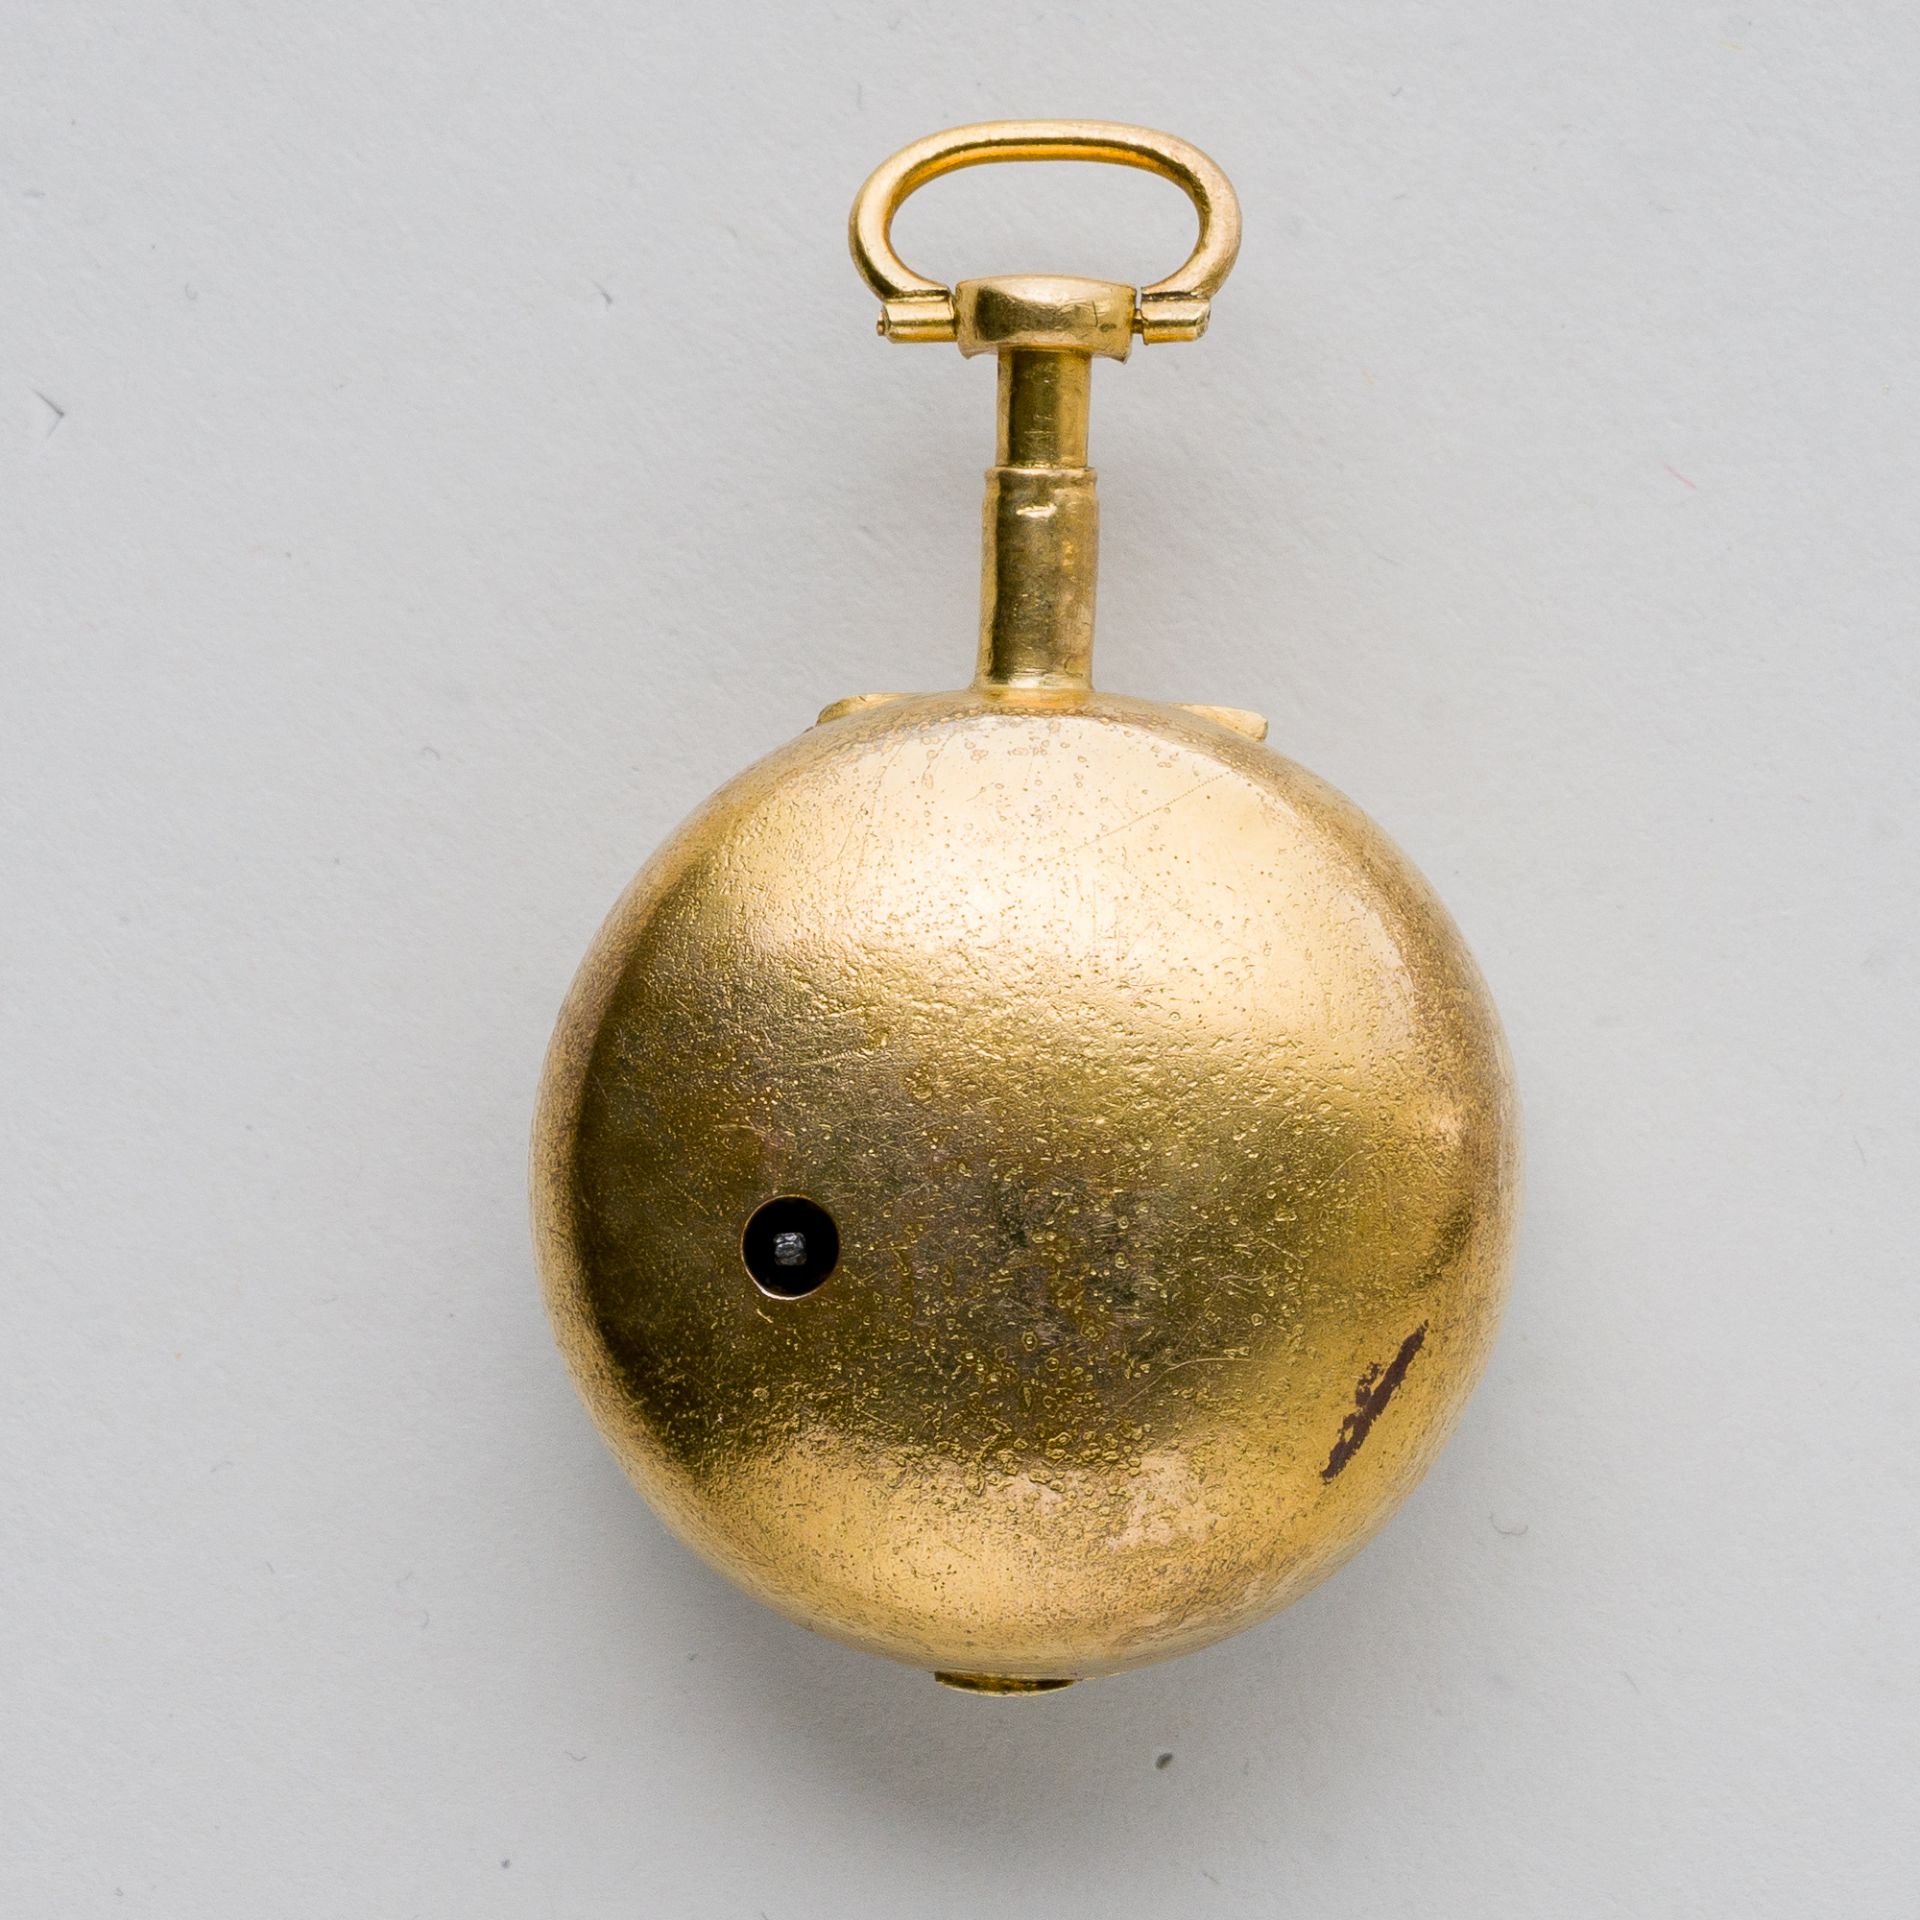 Bordier a Genève Spindeluhr Gold mit Diamantbesatz und Medaillon, 18. Jhd. - Image 5 of 8